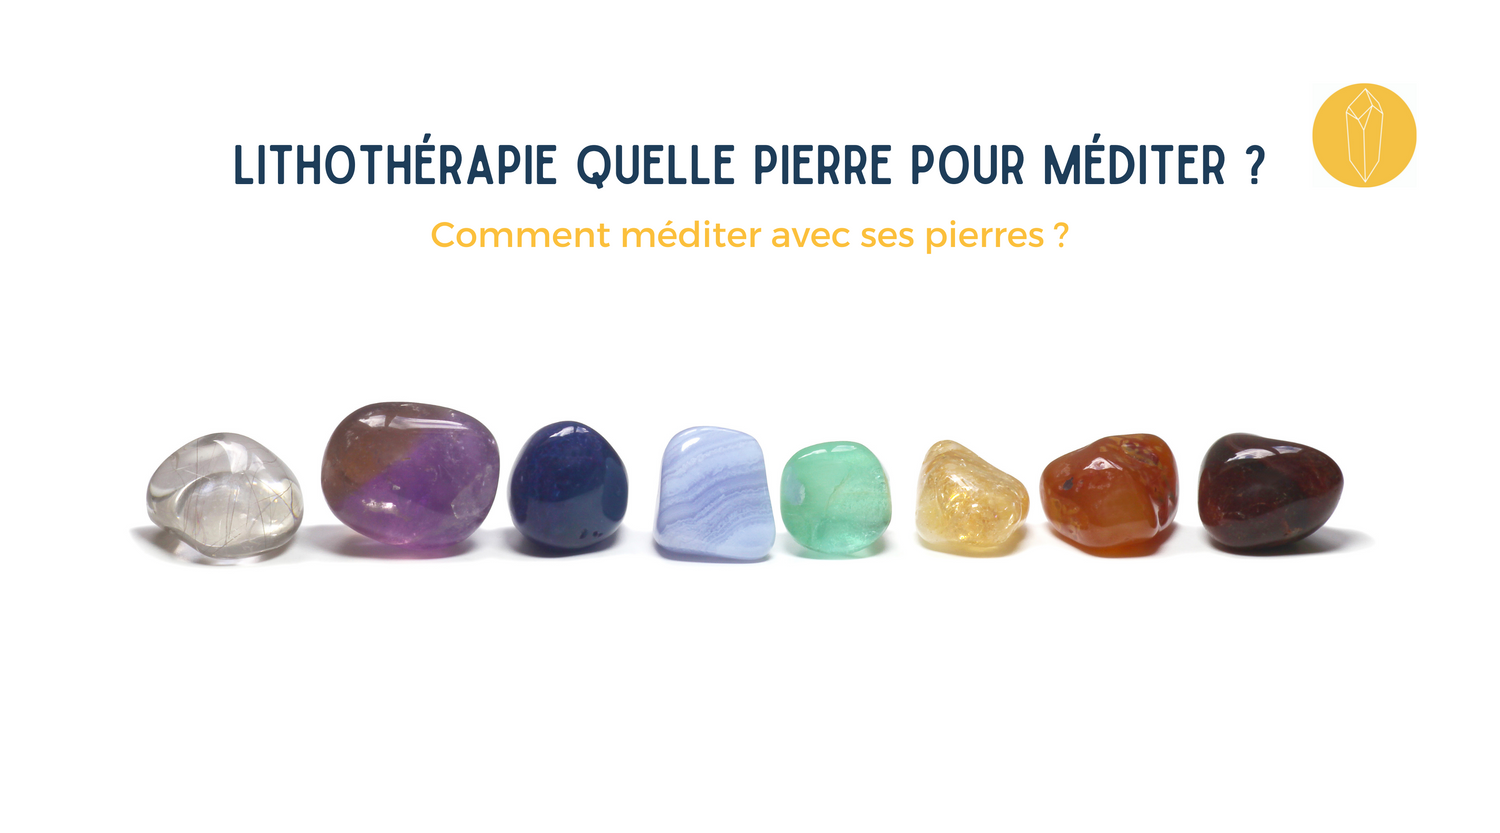 Pierre de méditation : quelle pierre choisir pour méditer et comment l’utiliser ?